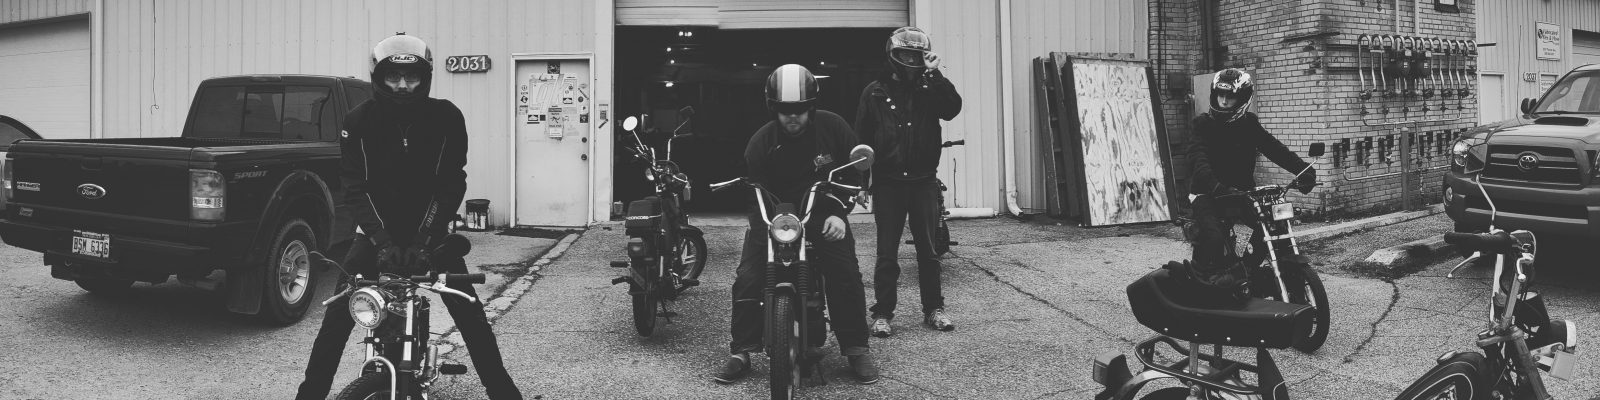 Kalamazoo Moped Riders